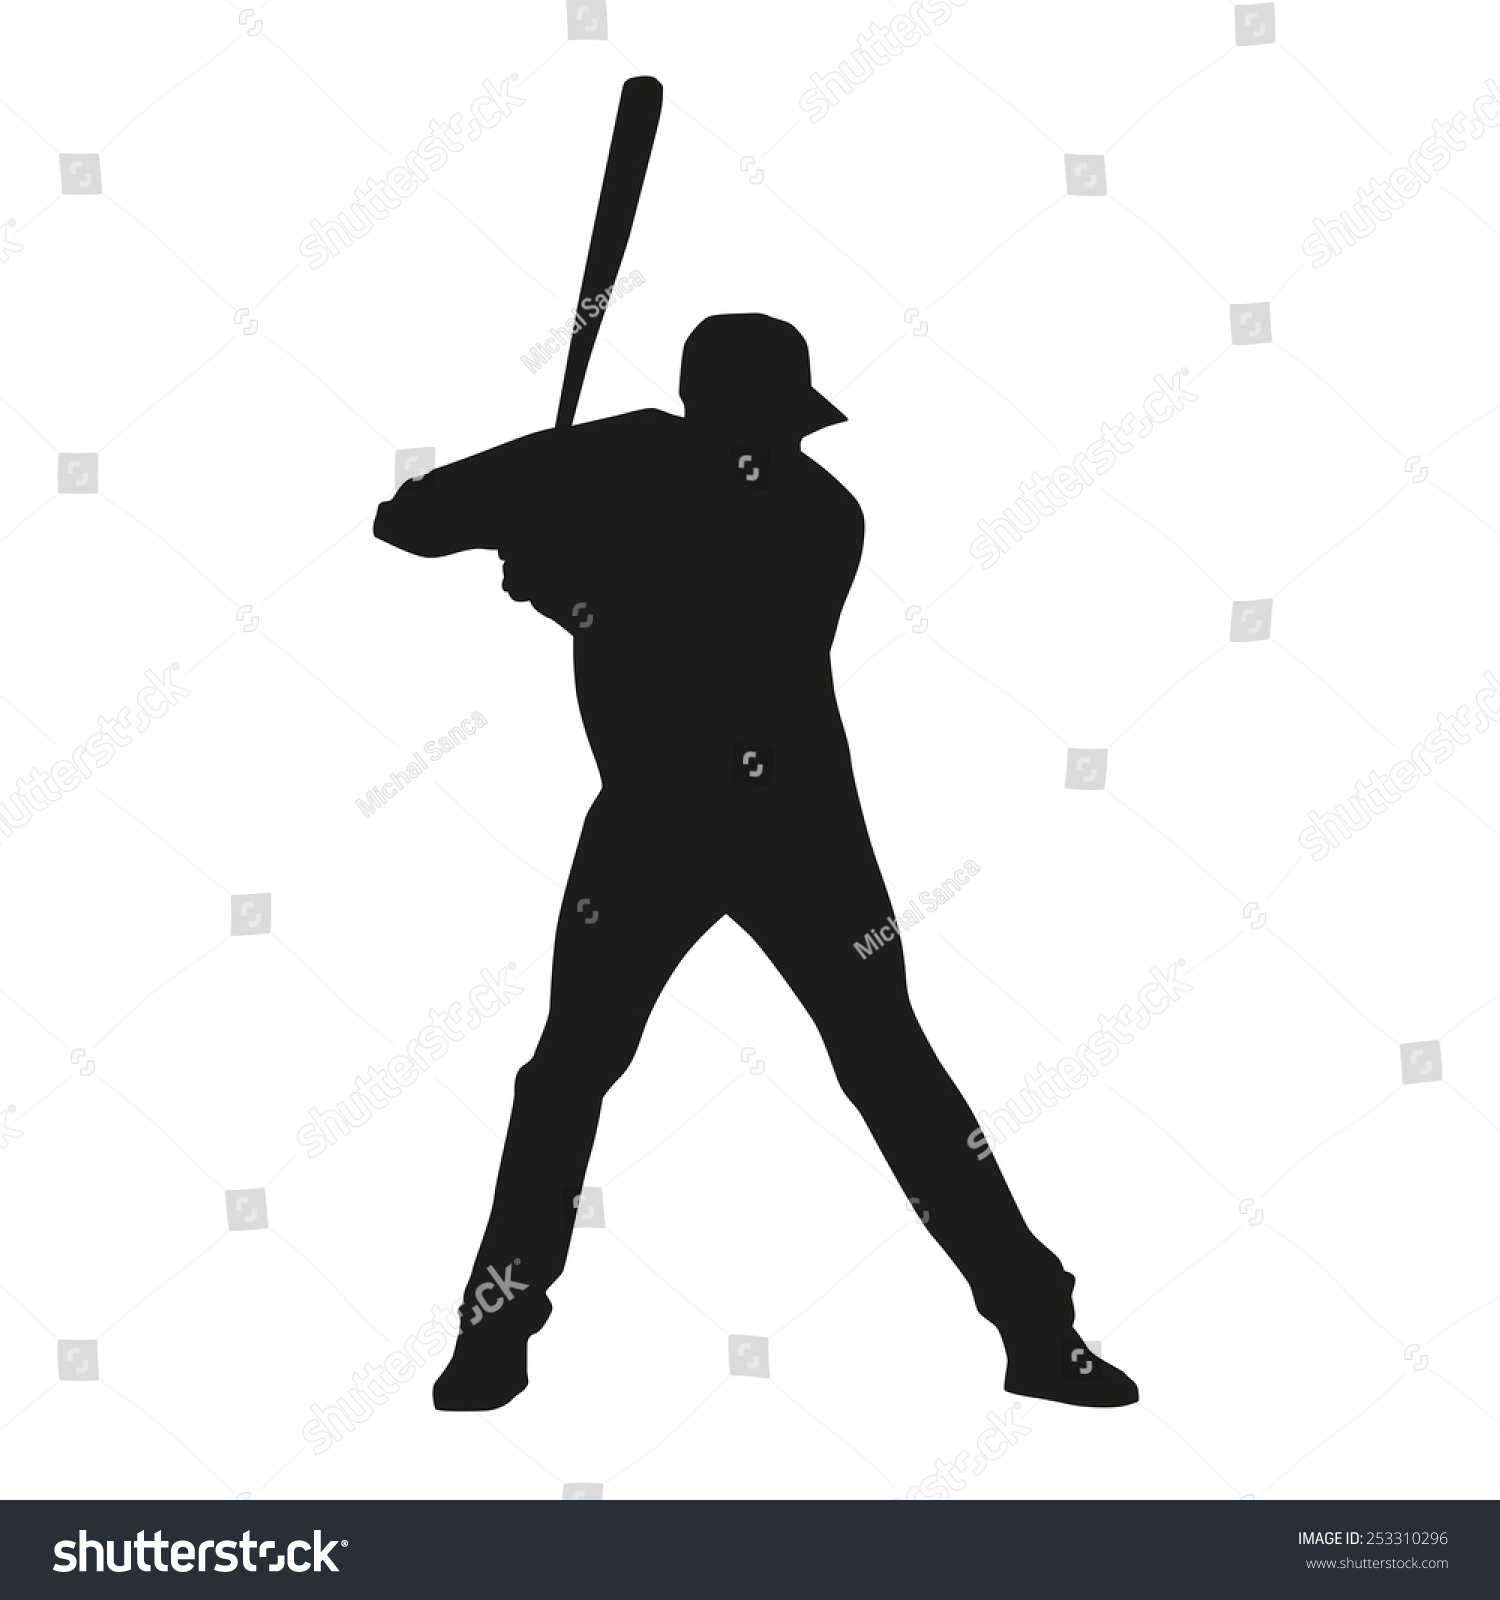 Baseball Player. Vector Silhouette - 253310296 : Shutterstock